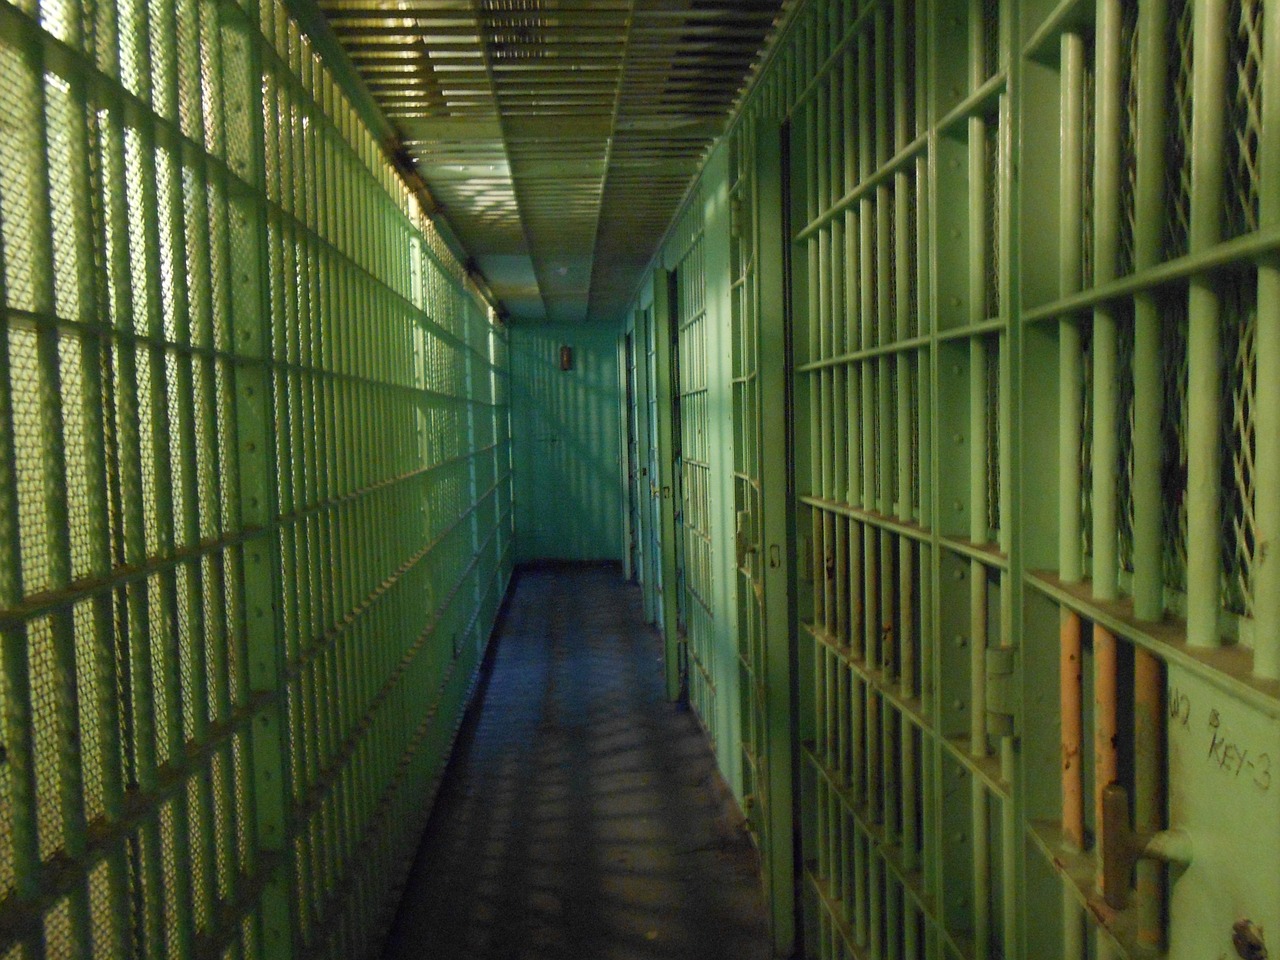 Un judecător a lucrat o lună la penitenciar pentru 5.000 de lei în plus la pensie. FOTO: Pixabay.com